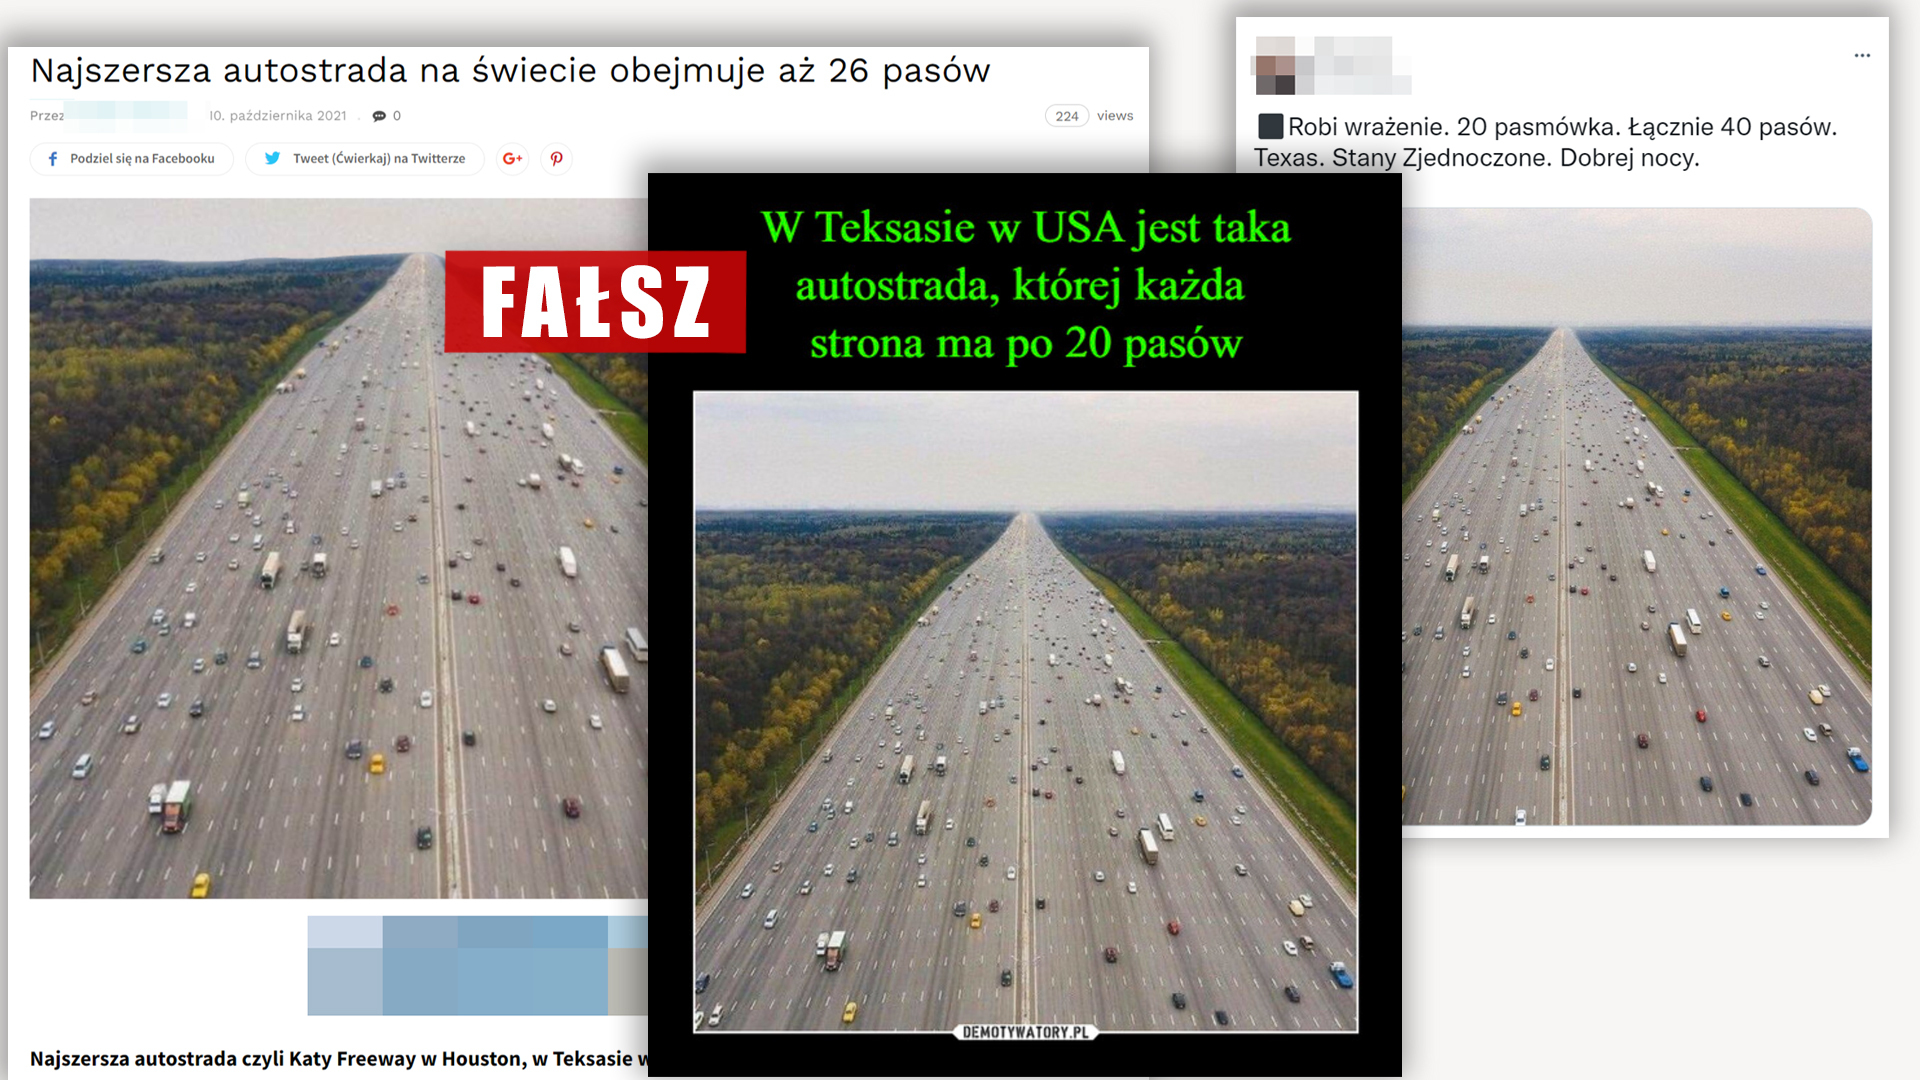 Ponownie w mediach społecznościowych pojawiło się zdjęcie bardzo szerokiej autostrady